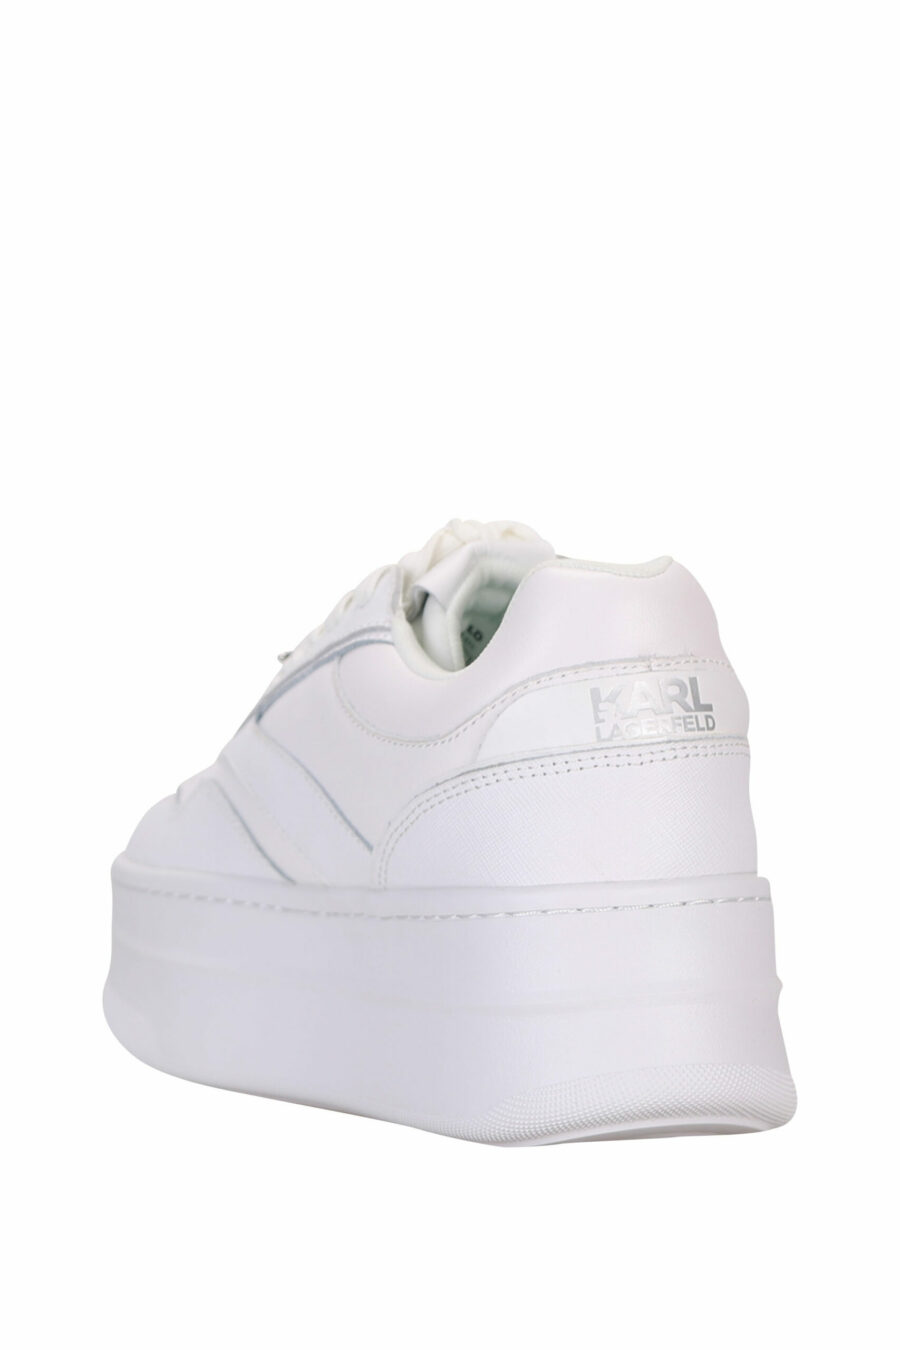 Zapatillas blancas con logo y plataforma - 5059529319518 3 scaled